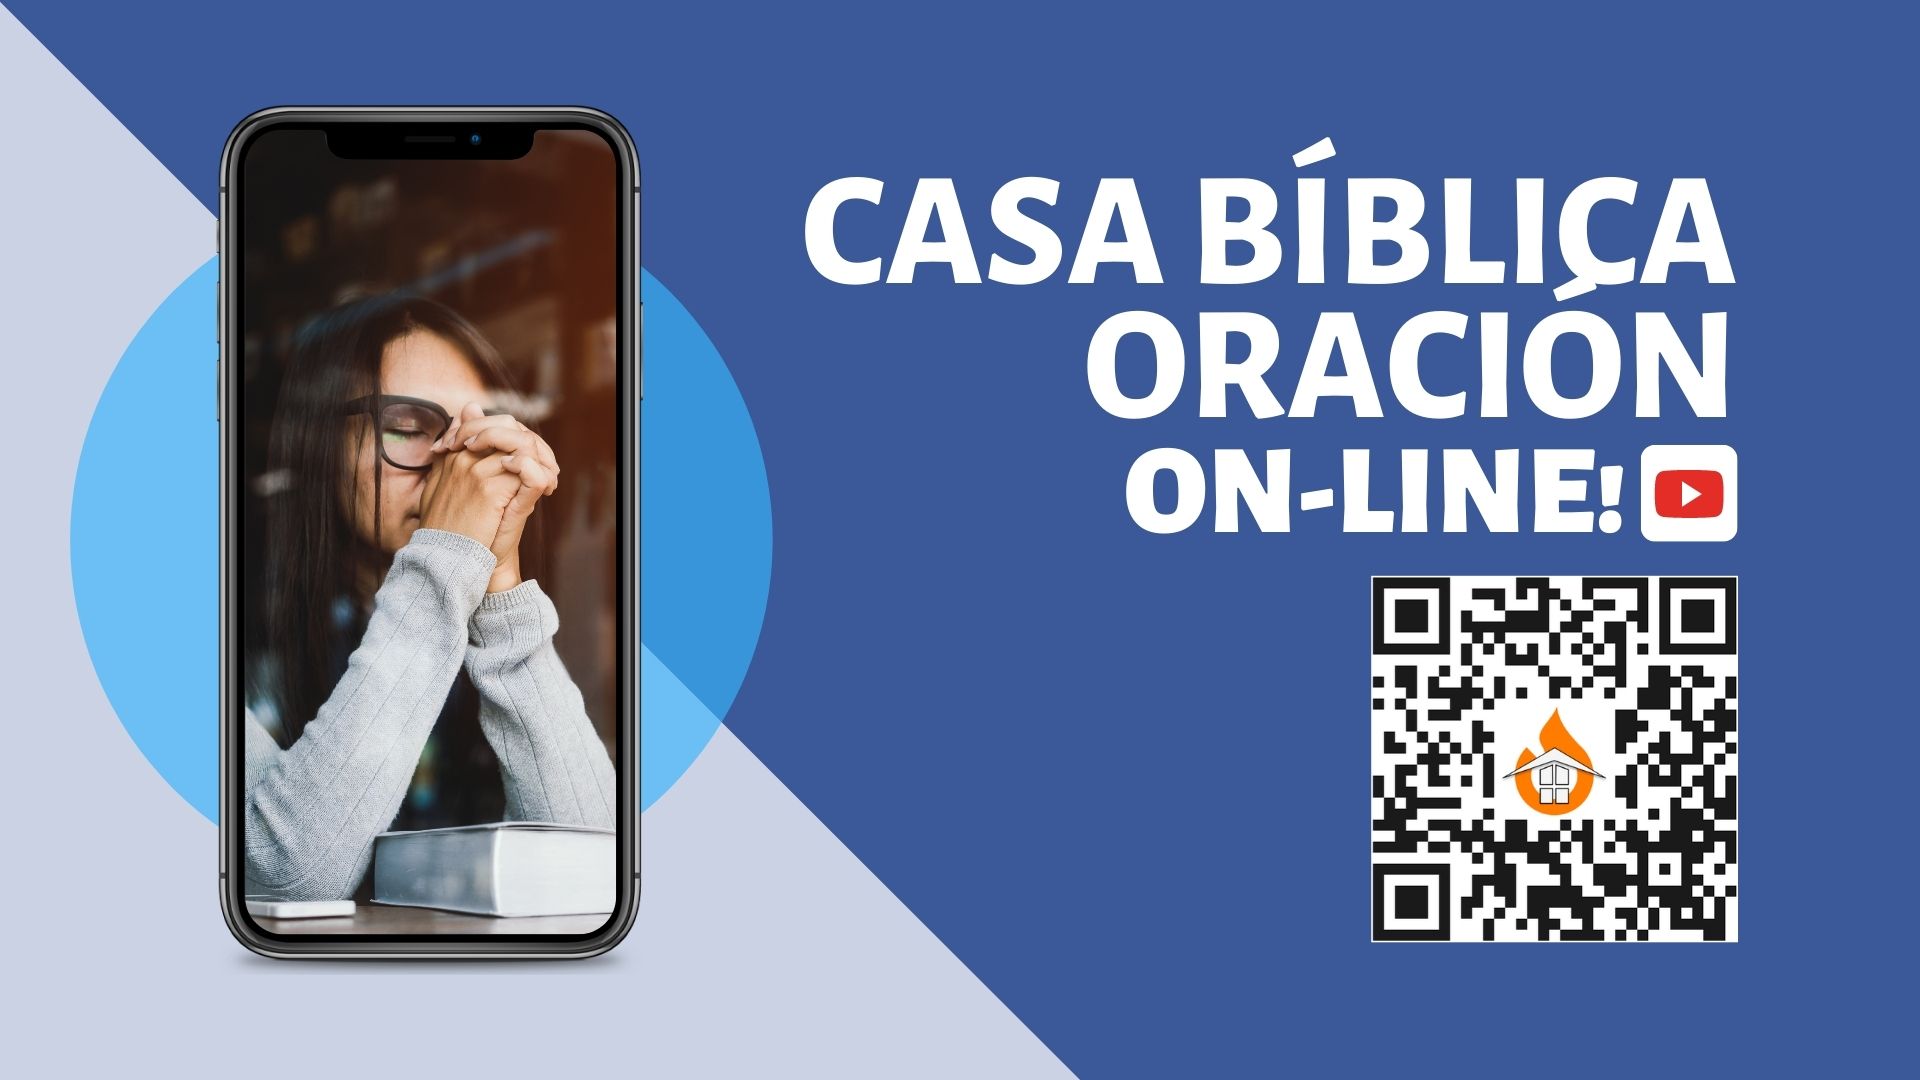 CASA BÍBLICA ORACIÓN - On Line!